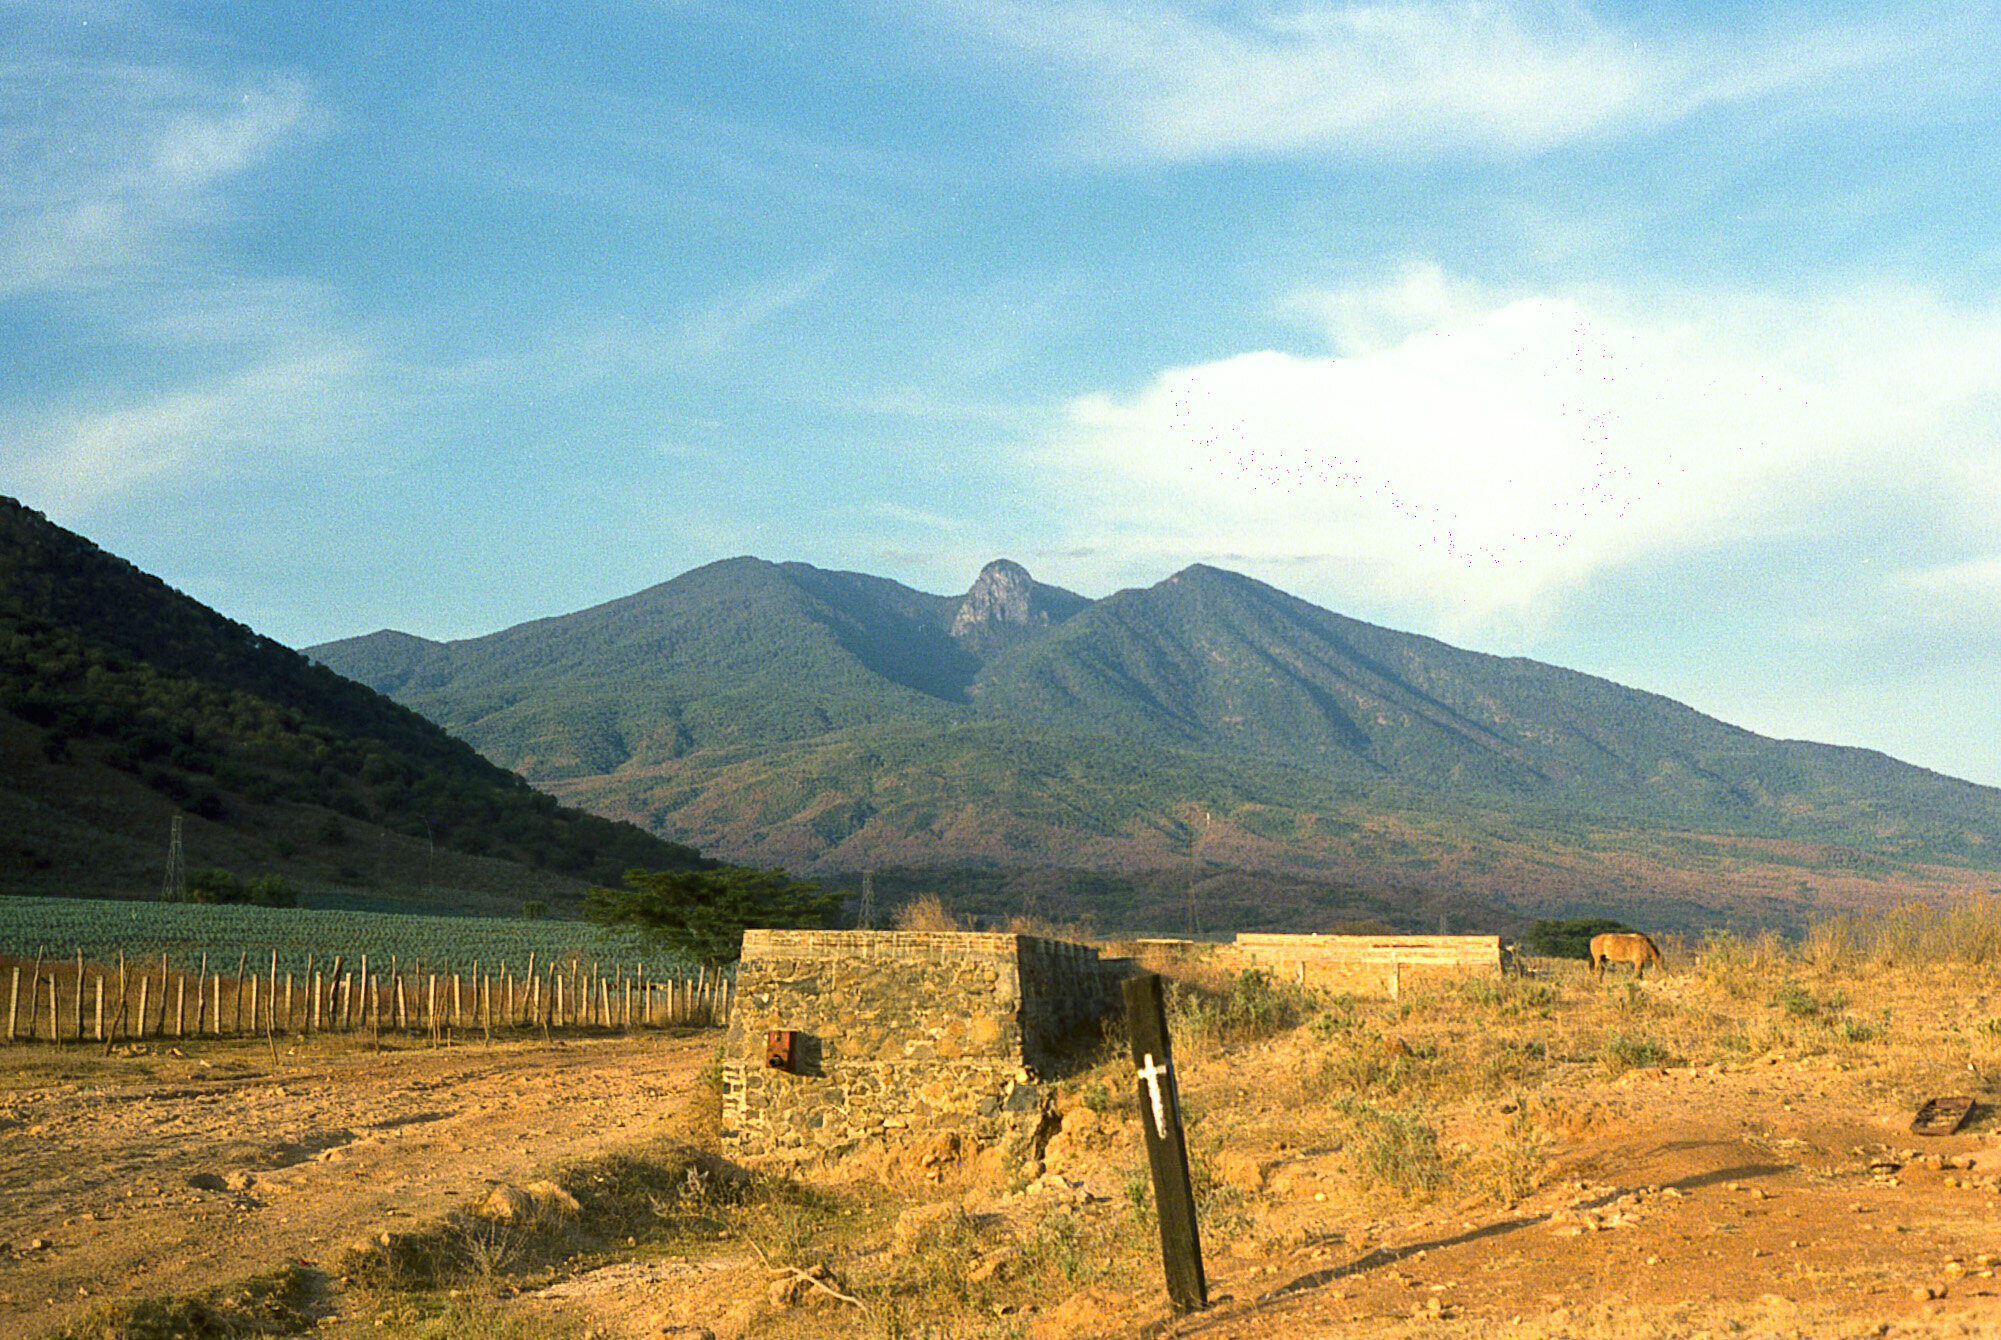 Volcan de Tequila, Mexico 1989